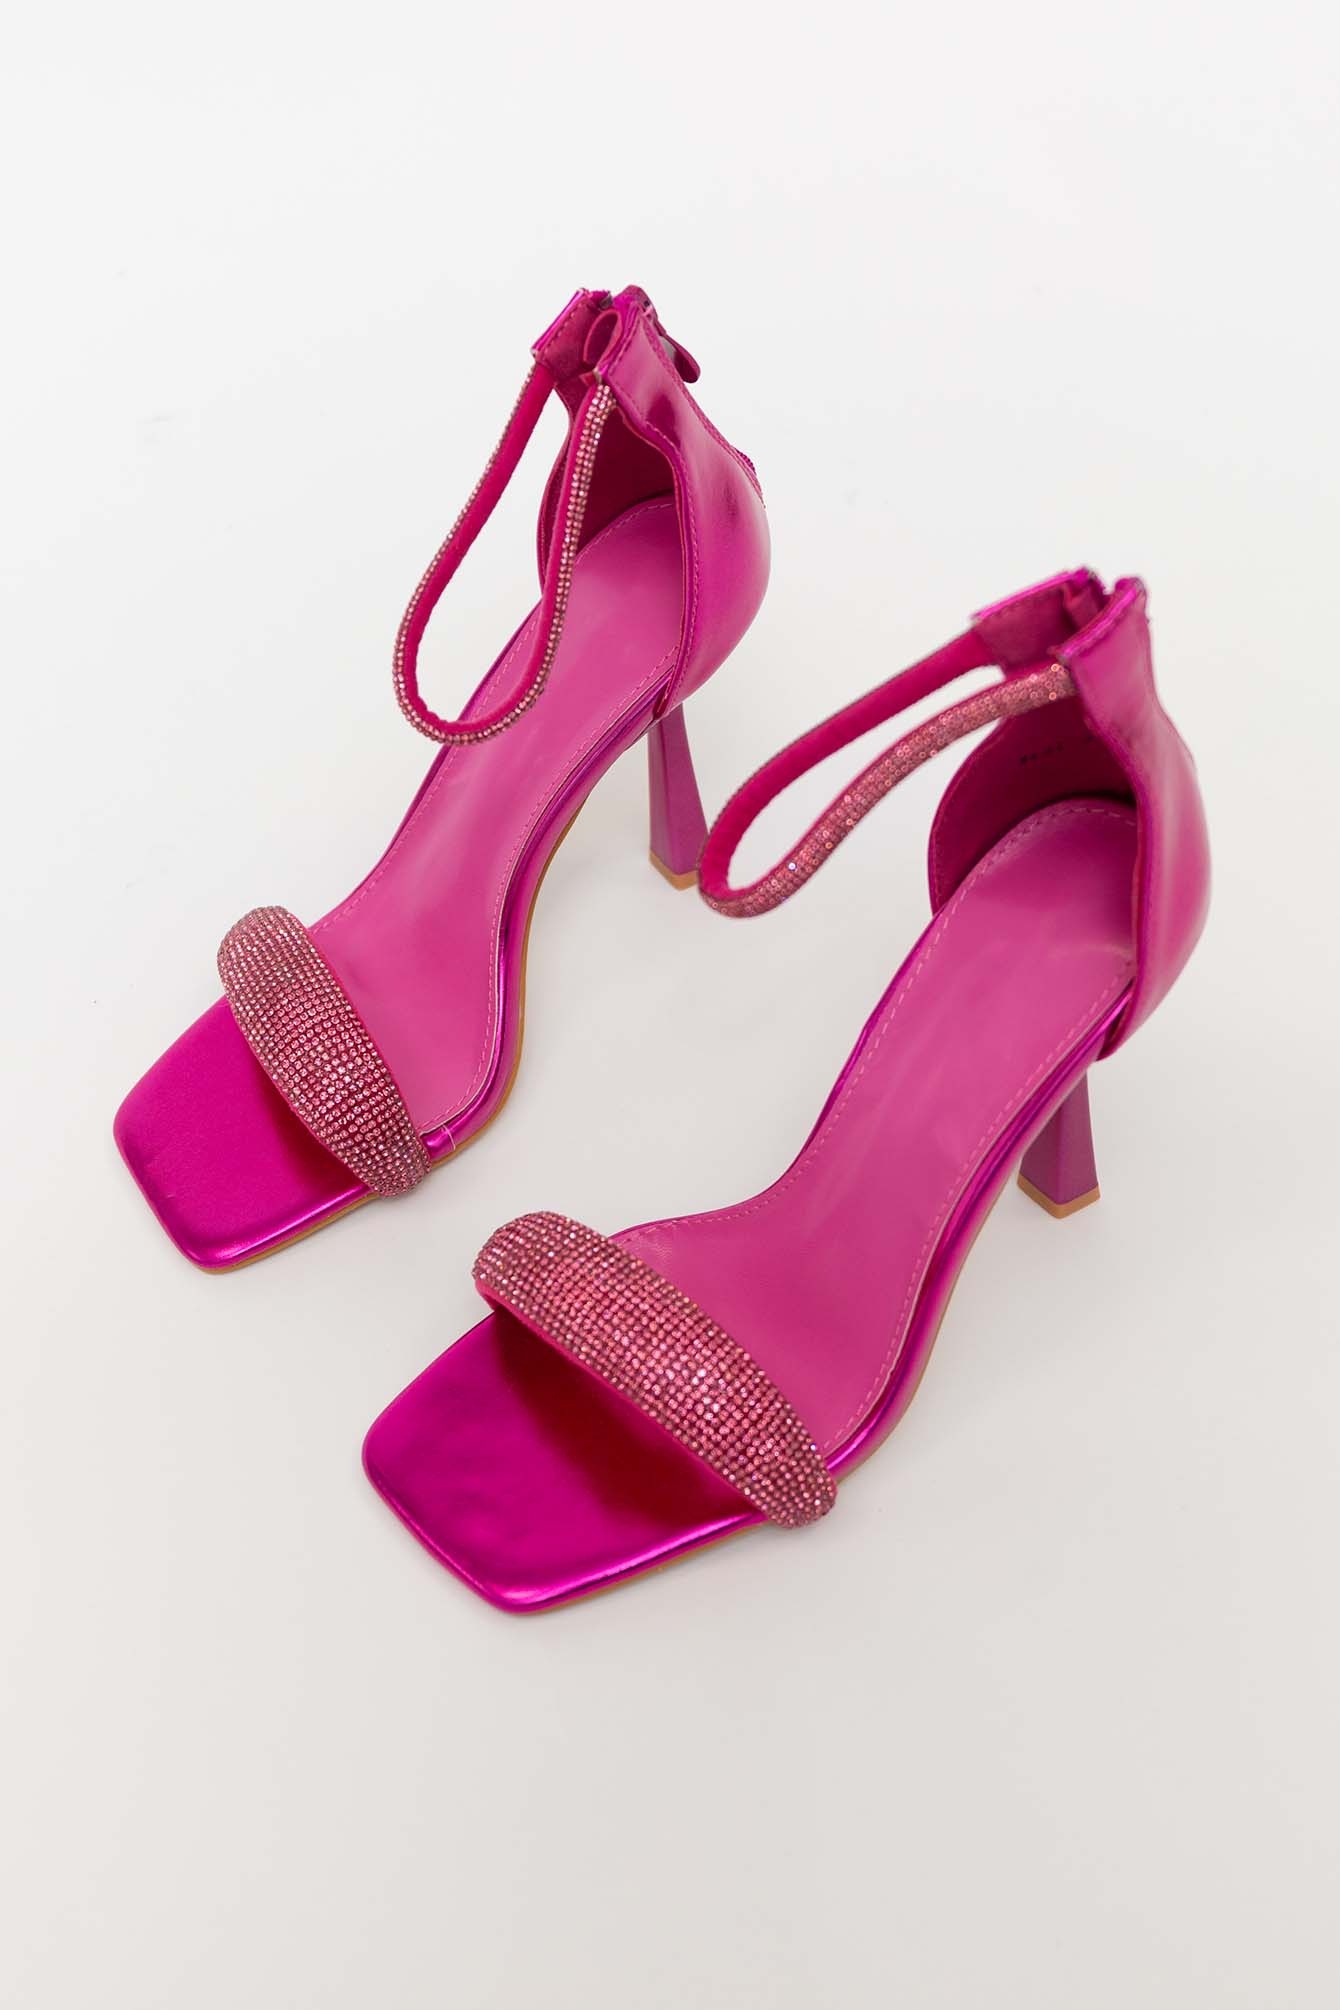 Shop roze glitter sandalen | - Elise Store